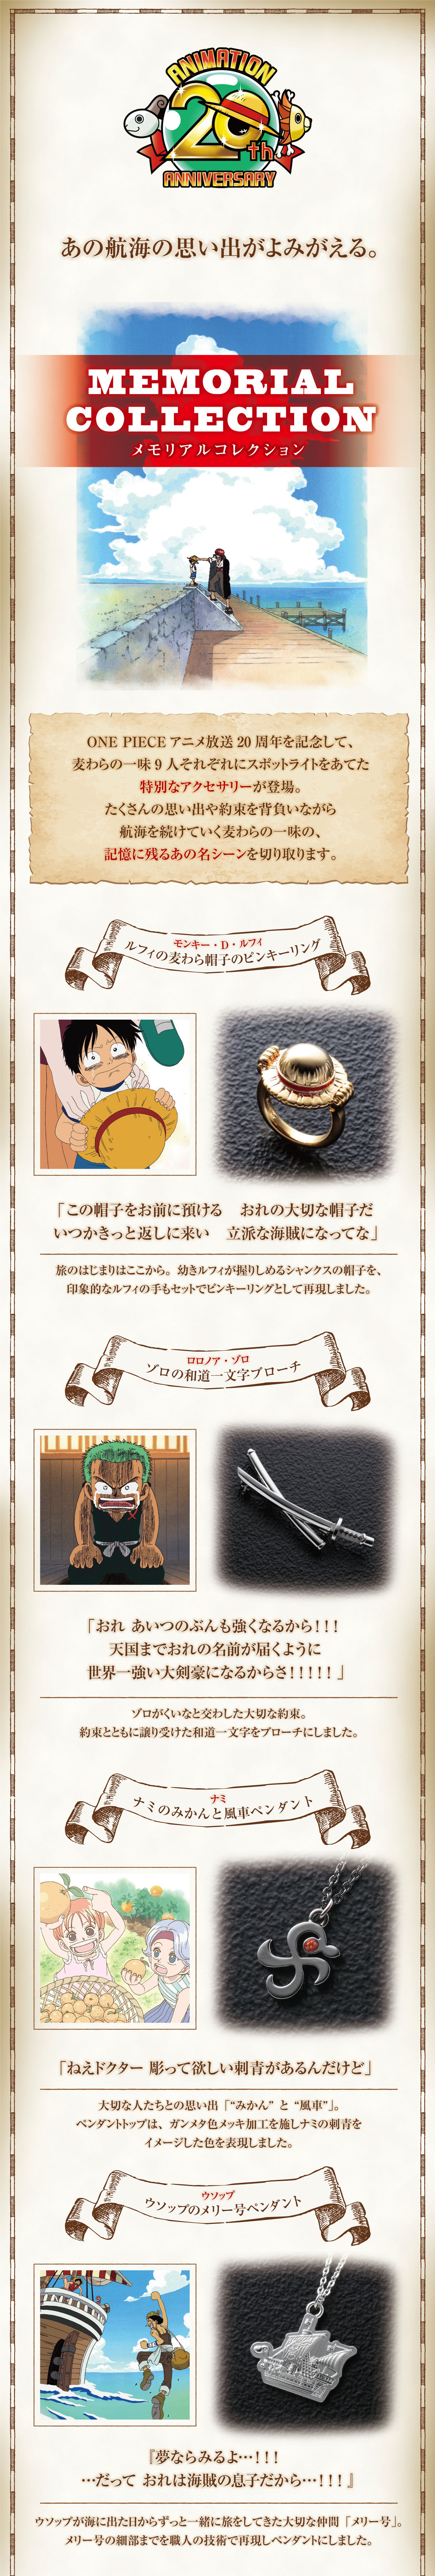 One Piece thメモリアルコレクション ワンピース 趣味 コレクション バンダイナムコグループ公式通販サイト